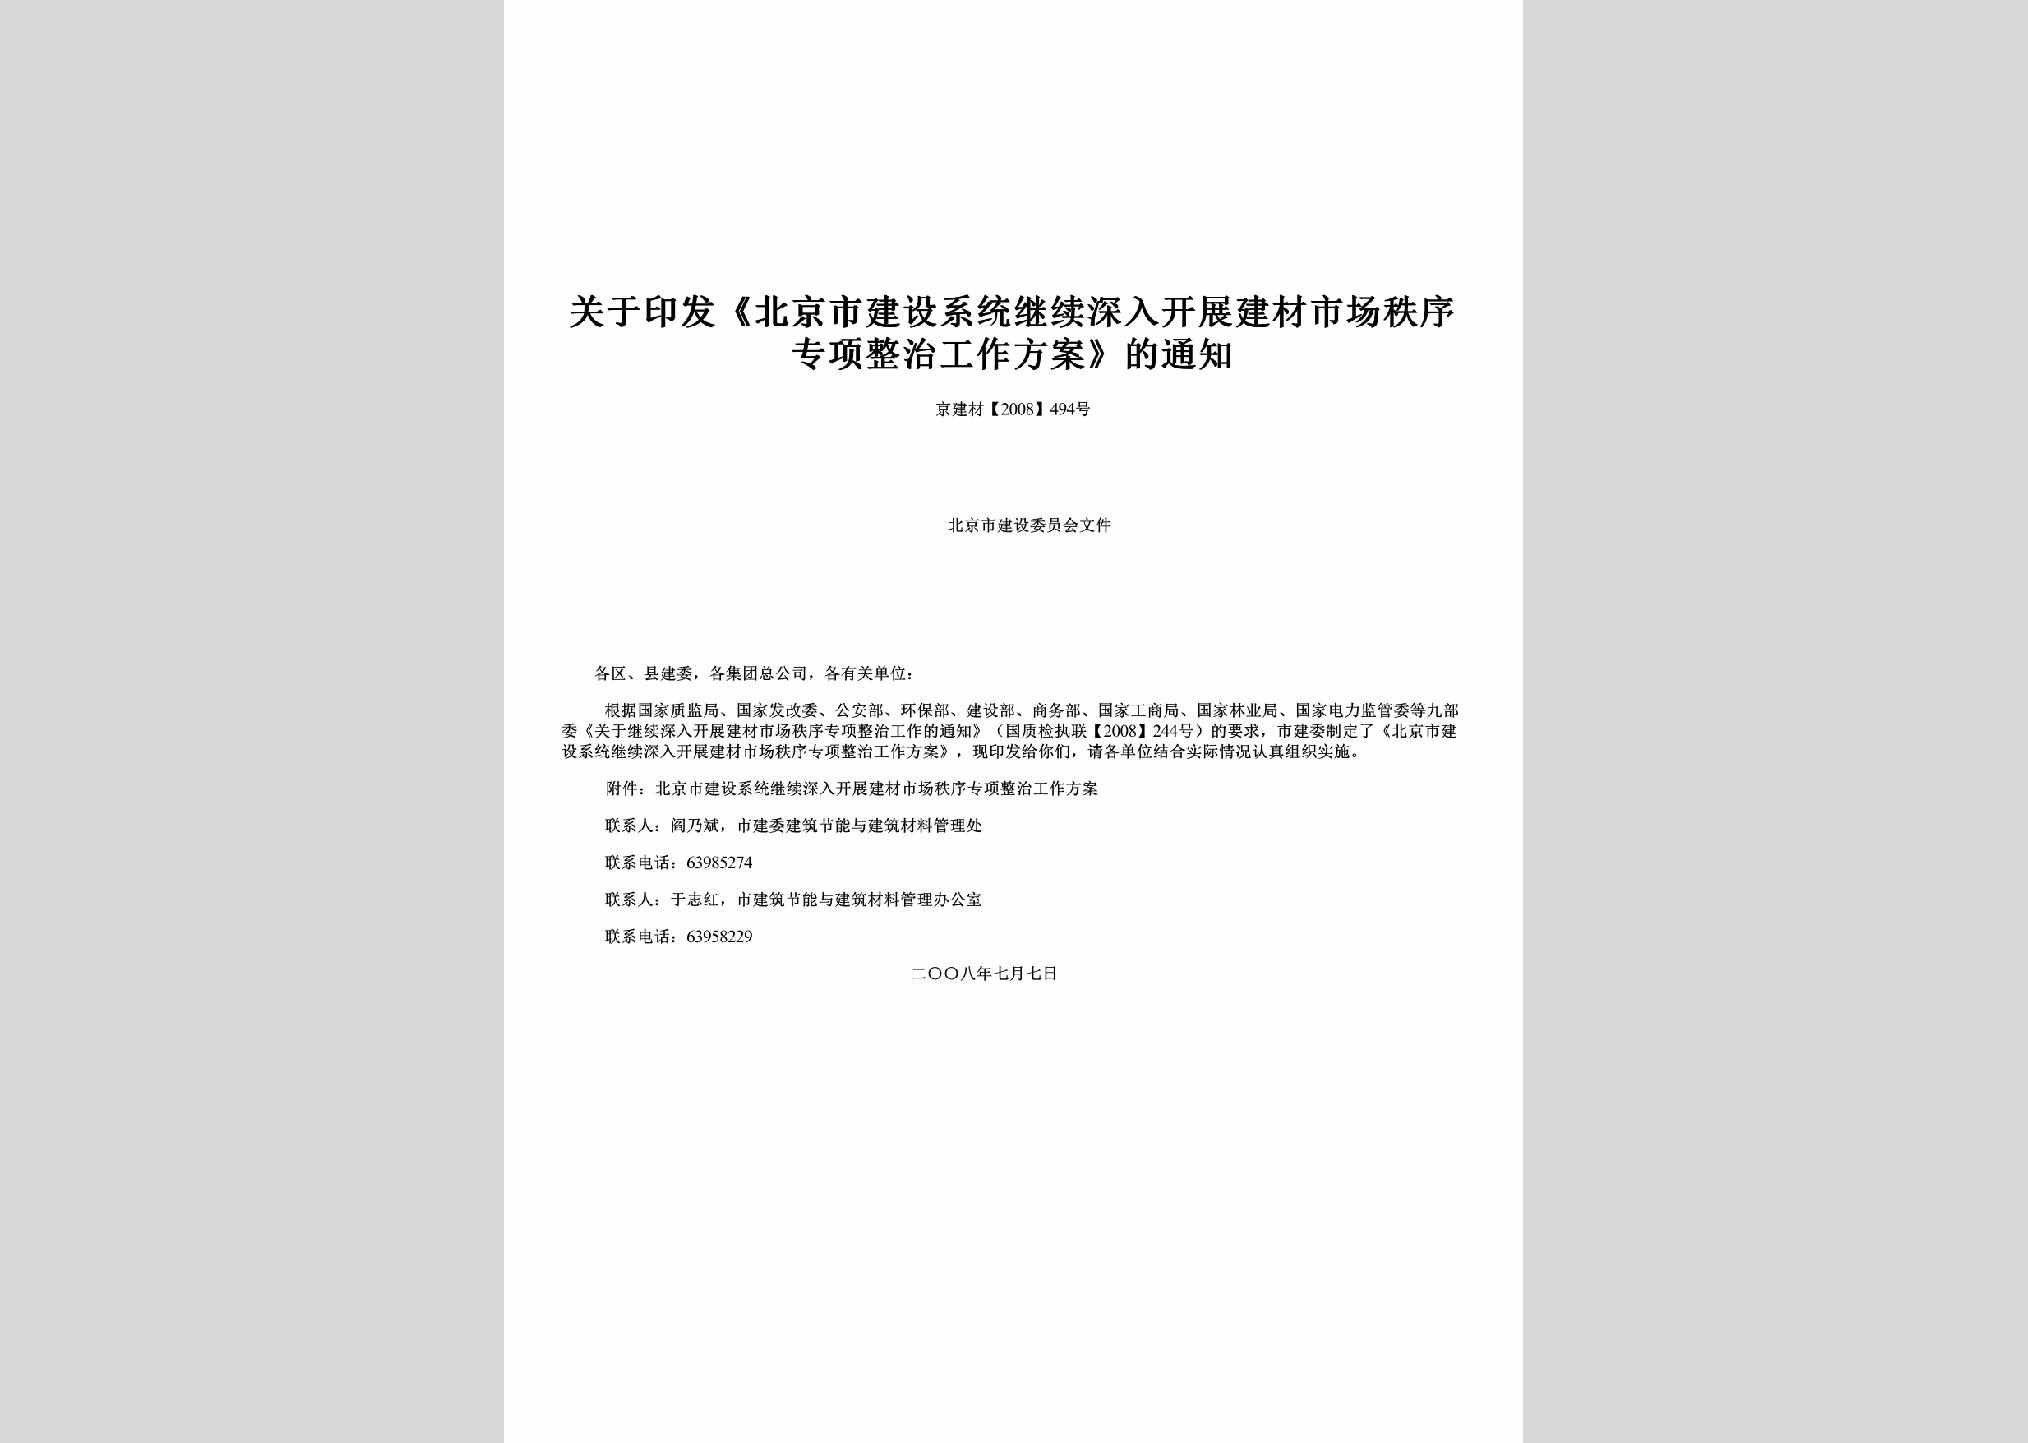 京建材[2008]494号：关于印发《北京市建设系统继续深入开展建材市场秩序专项整治工作方案》的通知